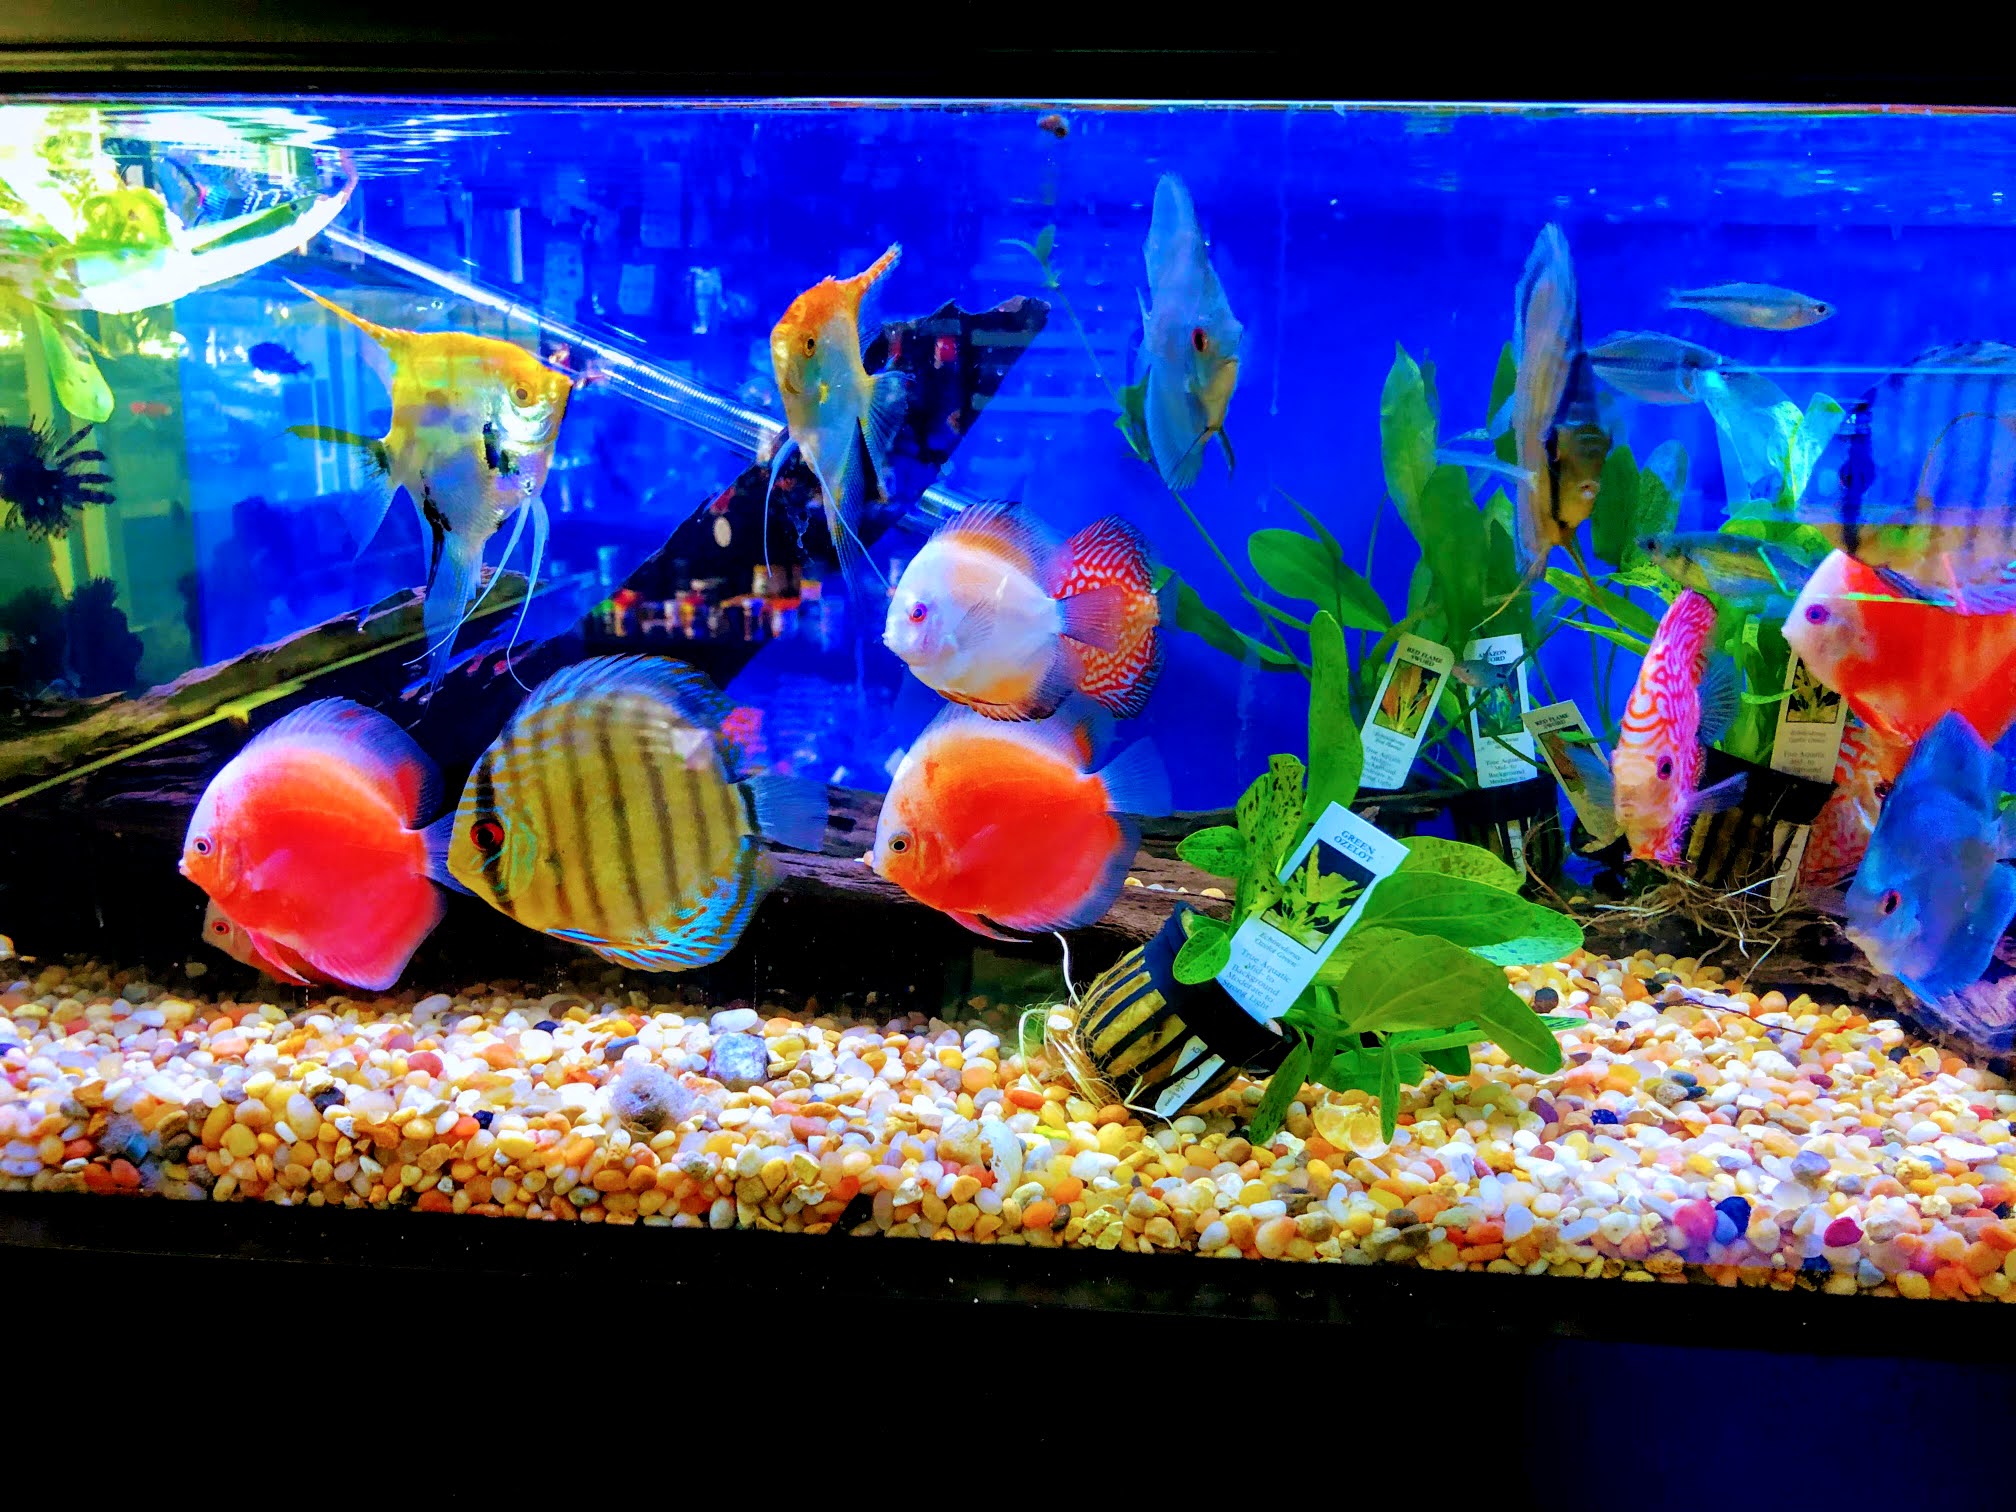 Foto Neptunes Aquariums de Acuarios en Hialeah FL - Galería de ListasLocales.com